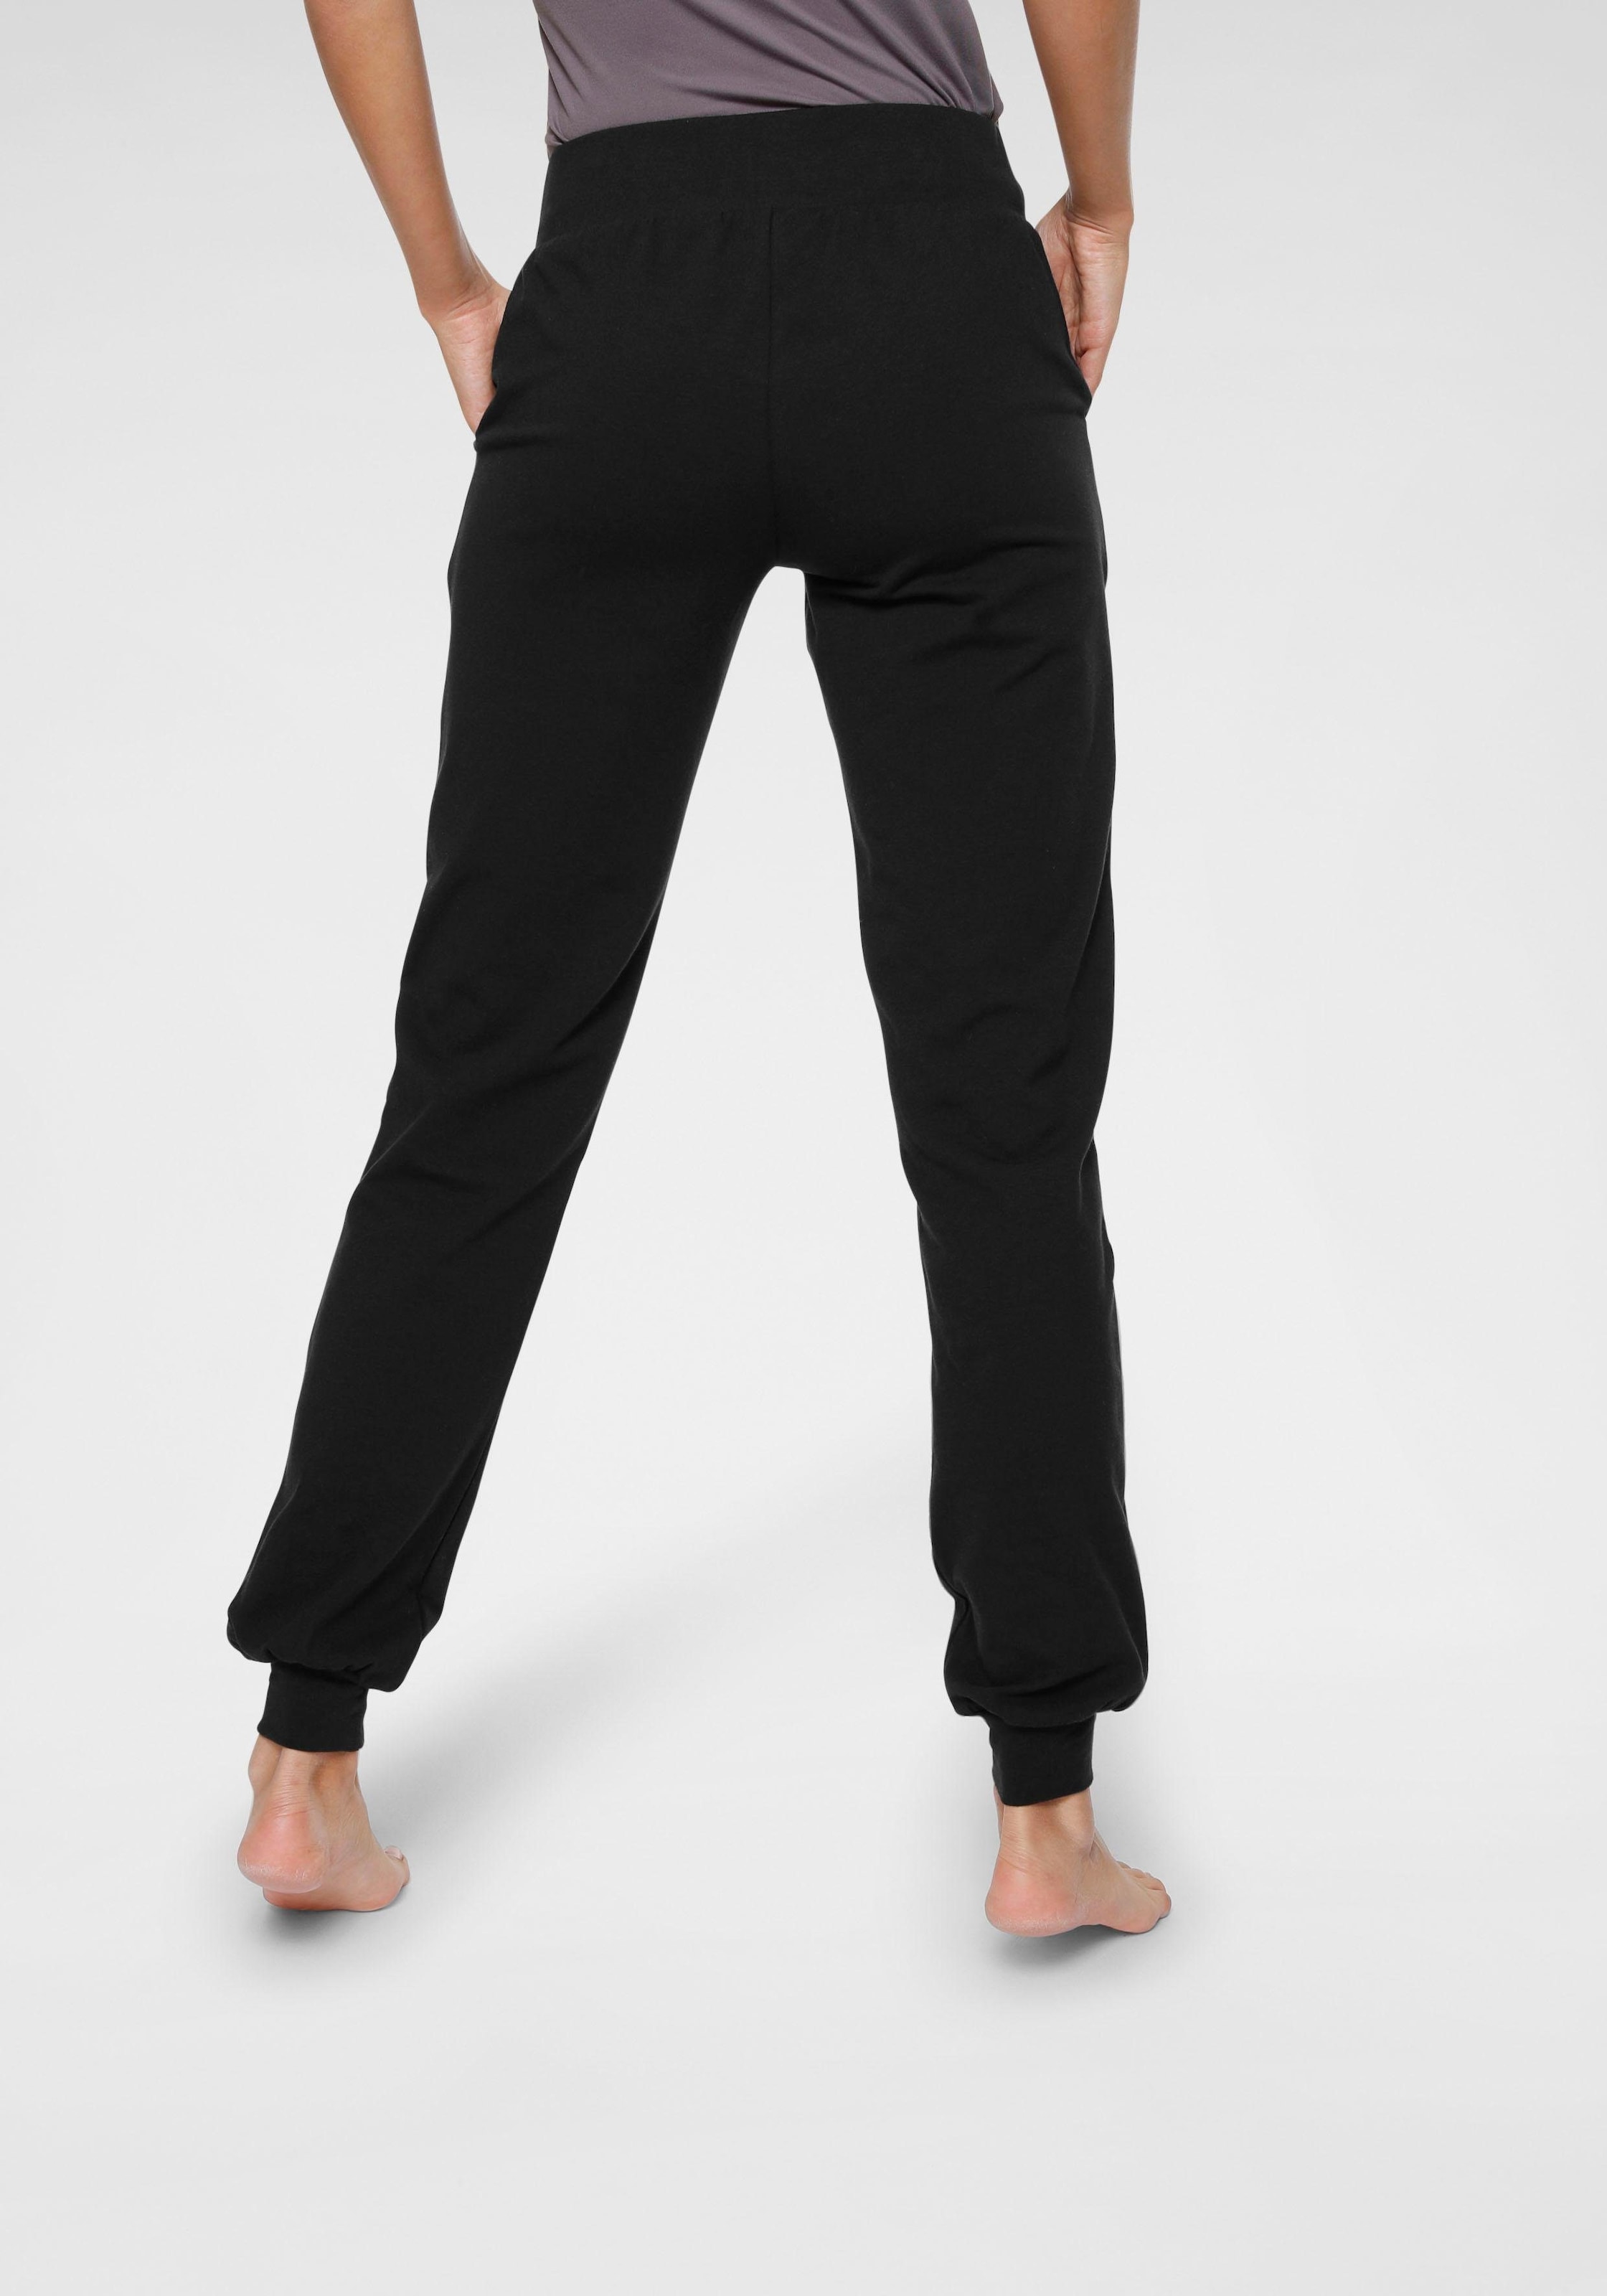 Ocean Sportswear Yogahose & Loose Pants - »Soulwear kaufen Yoga Fit« - Relax online